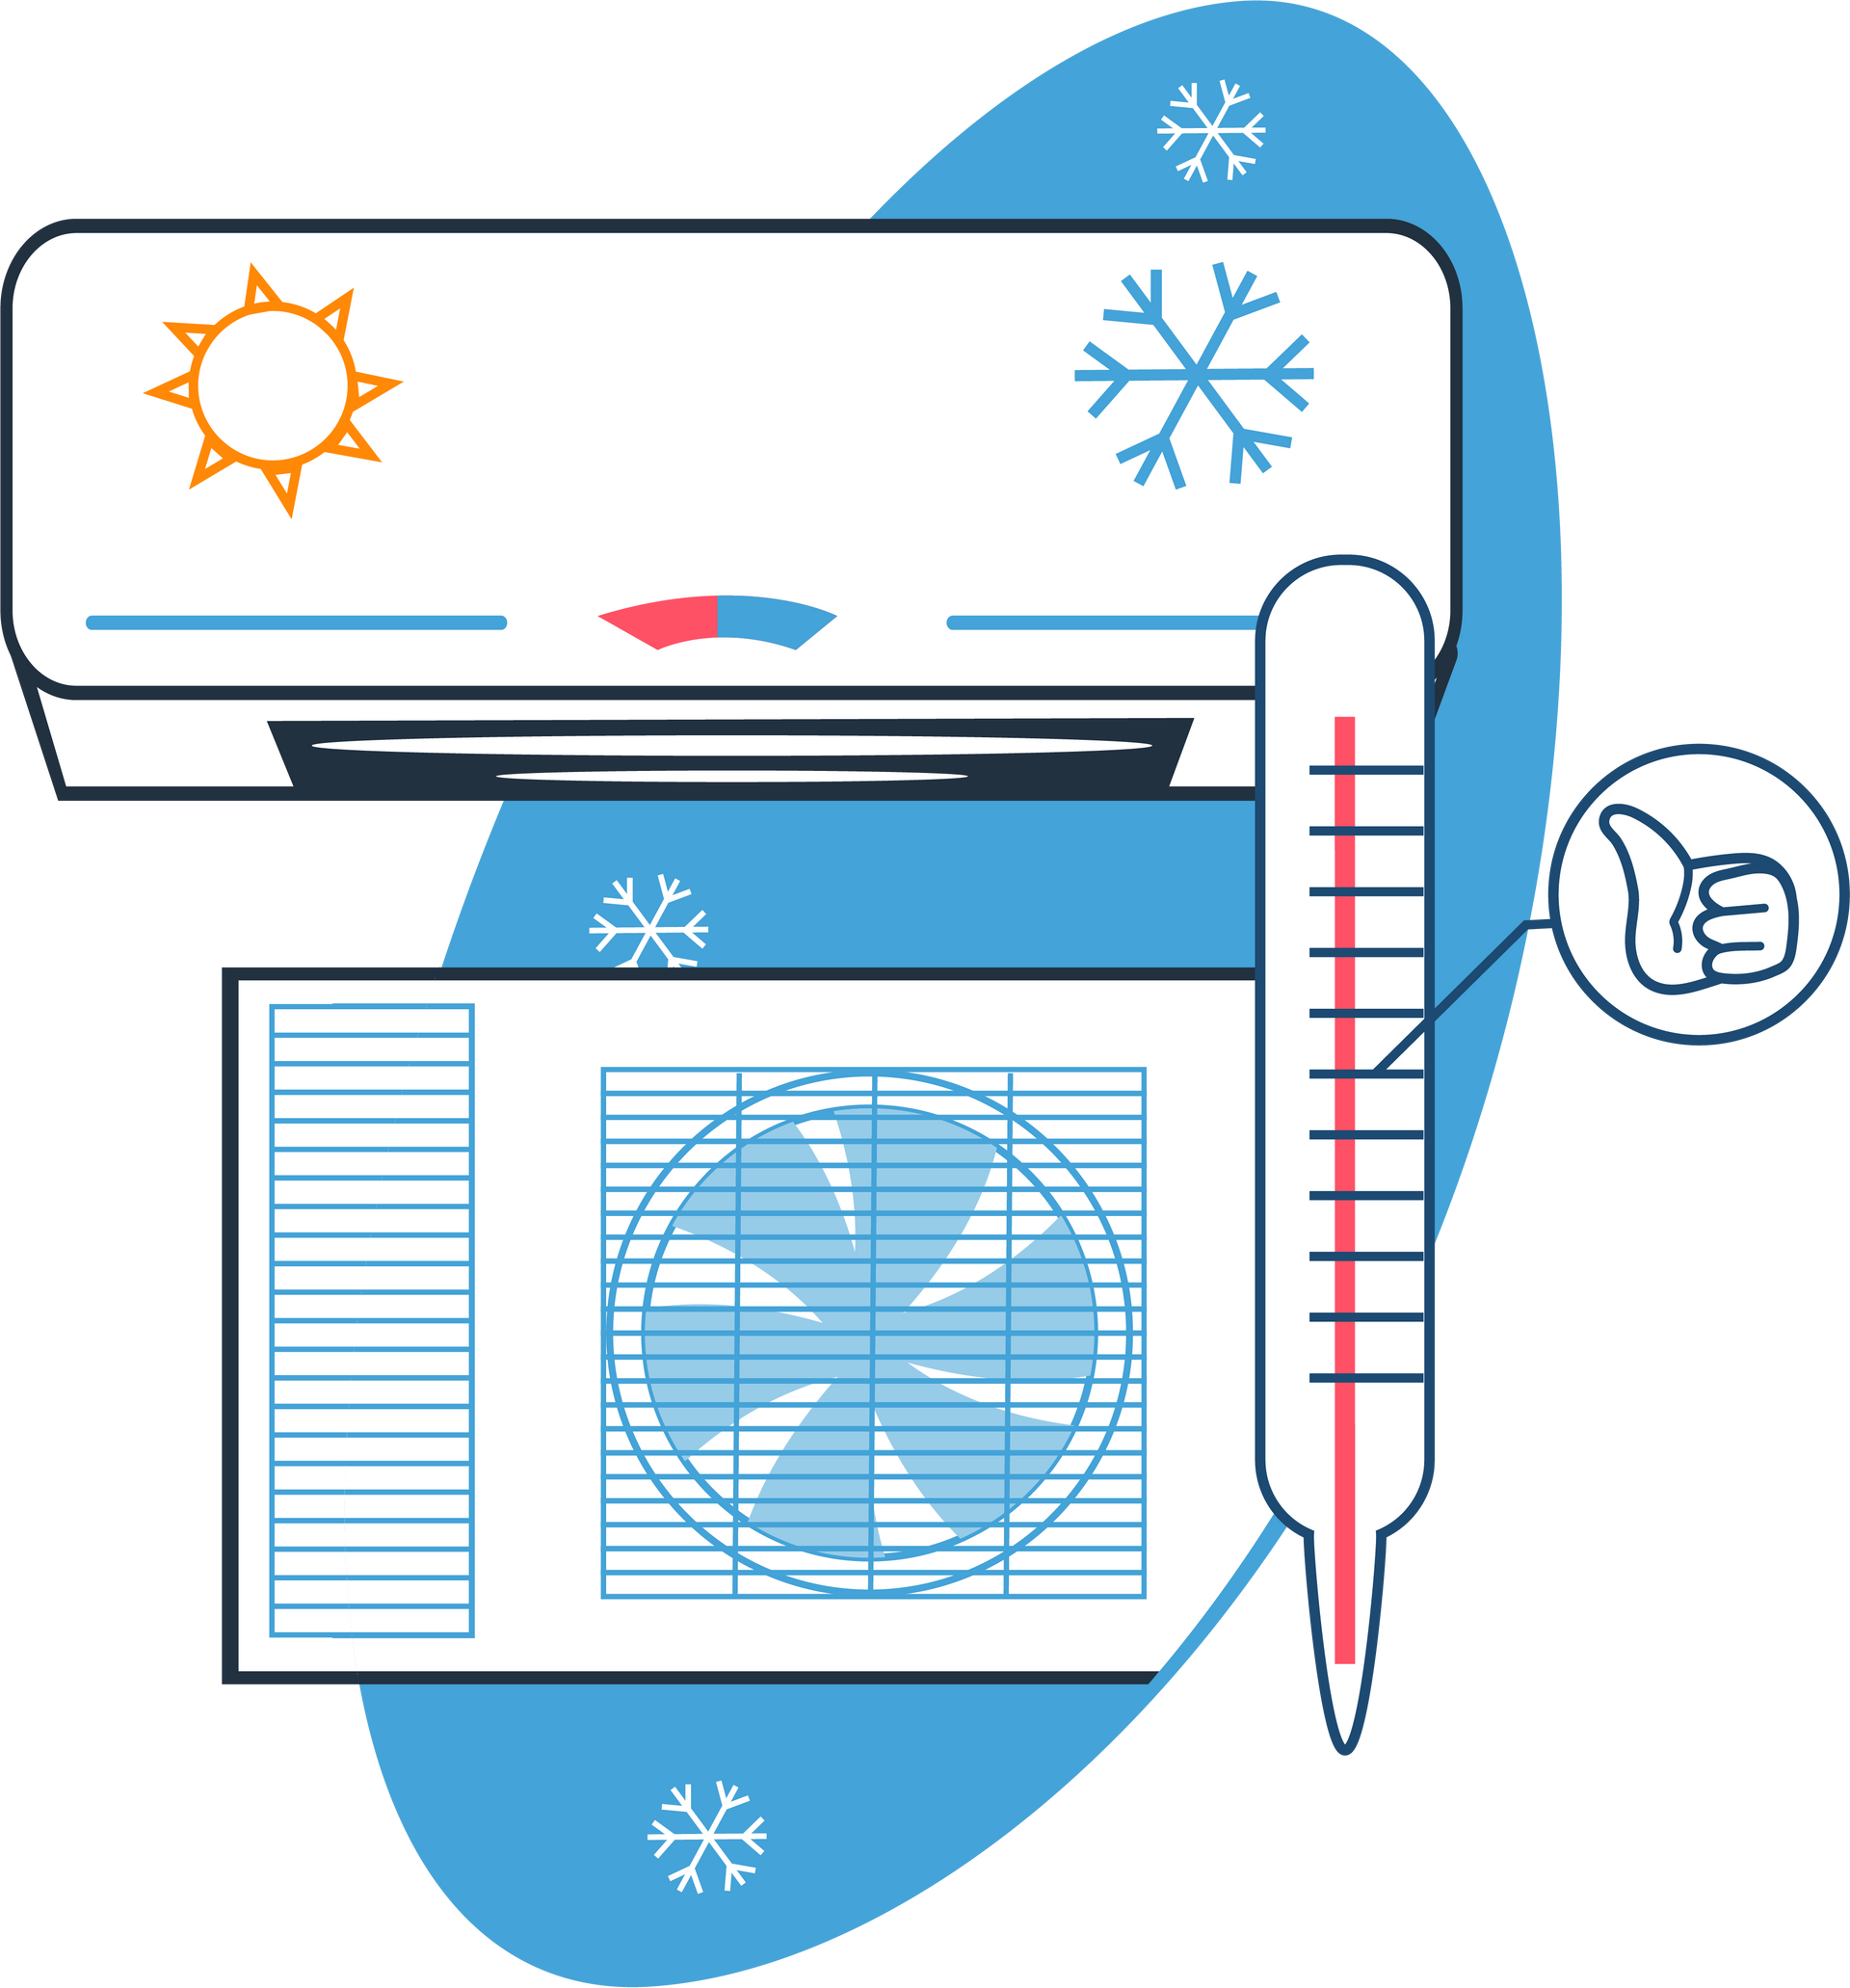 Systèmes de chauffage et climatisation en dessin - Page Froid industriel